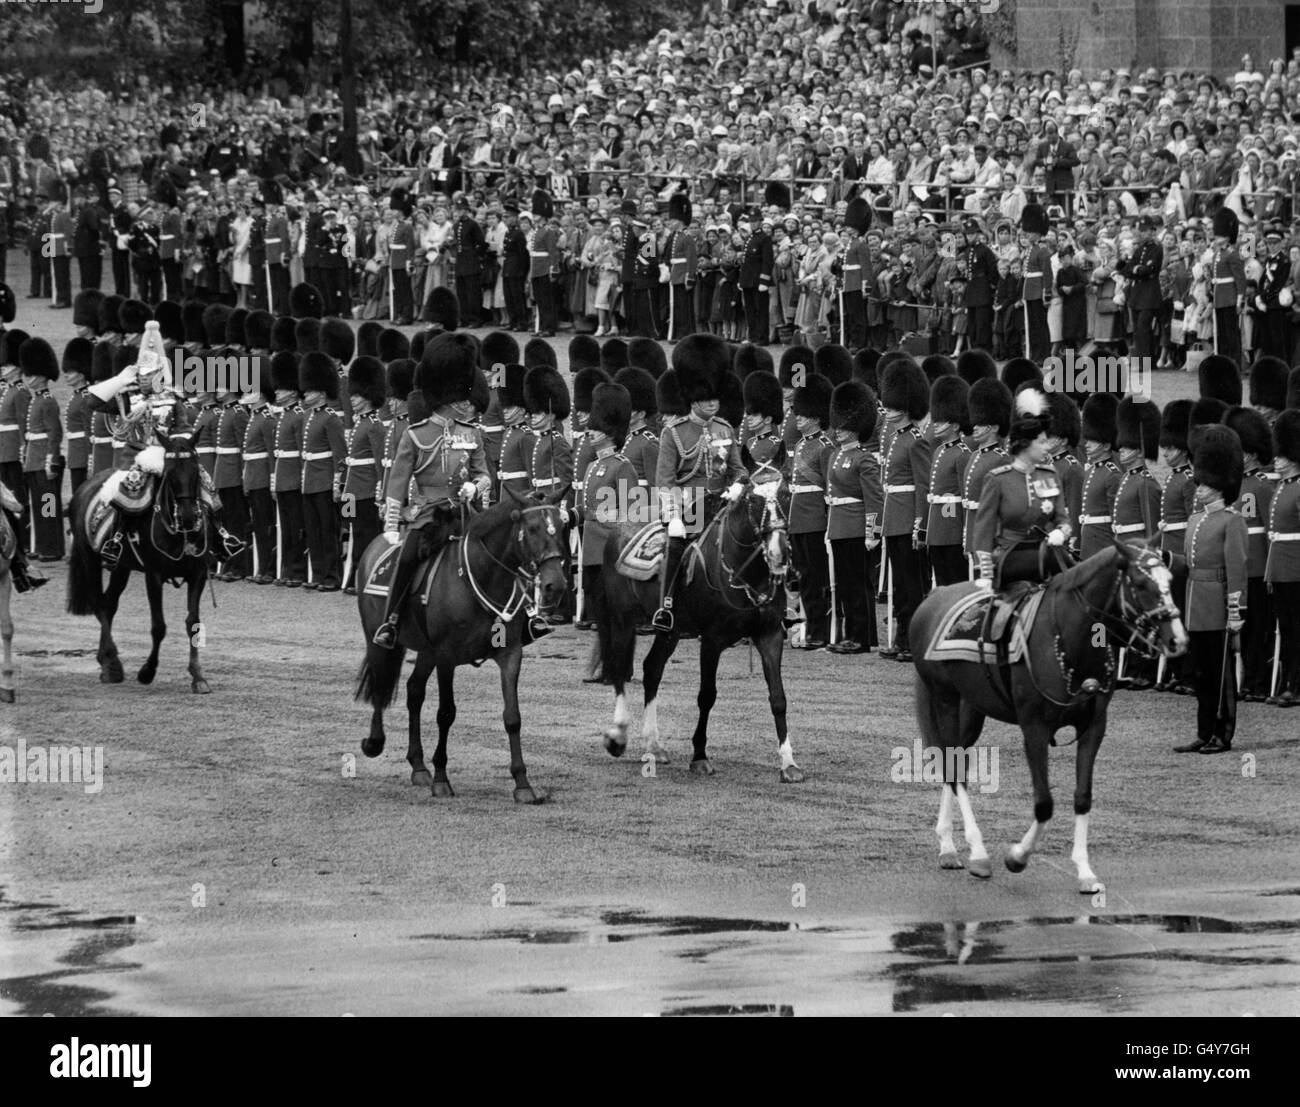 **Low-res scanné hors impression** la reine Elizabeth II, en uniforme des Grenadier Guards, fait monter son cheval Imperial pendant la cérémonie de la couleur à Horse Guards Parade, Londres. Le duc de Gloucester (centre) et le duc d'Édimbourg se trouvent juste derrière, à cheval. Banque D'Images